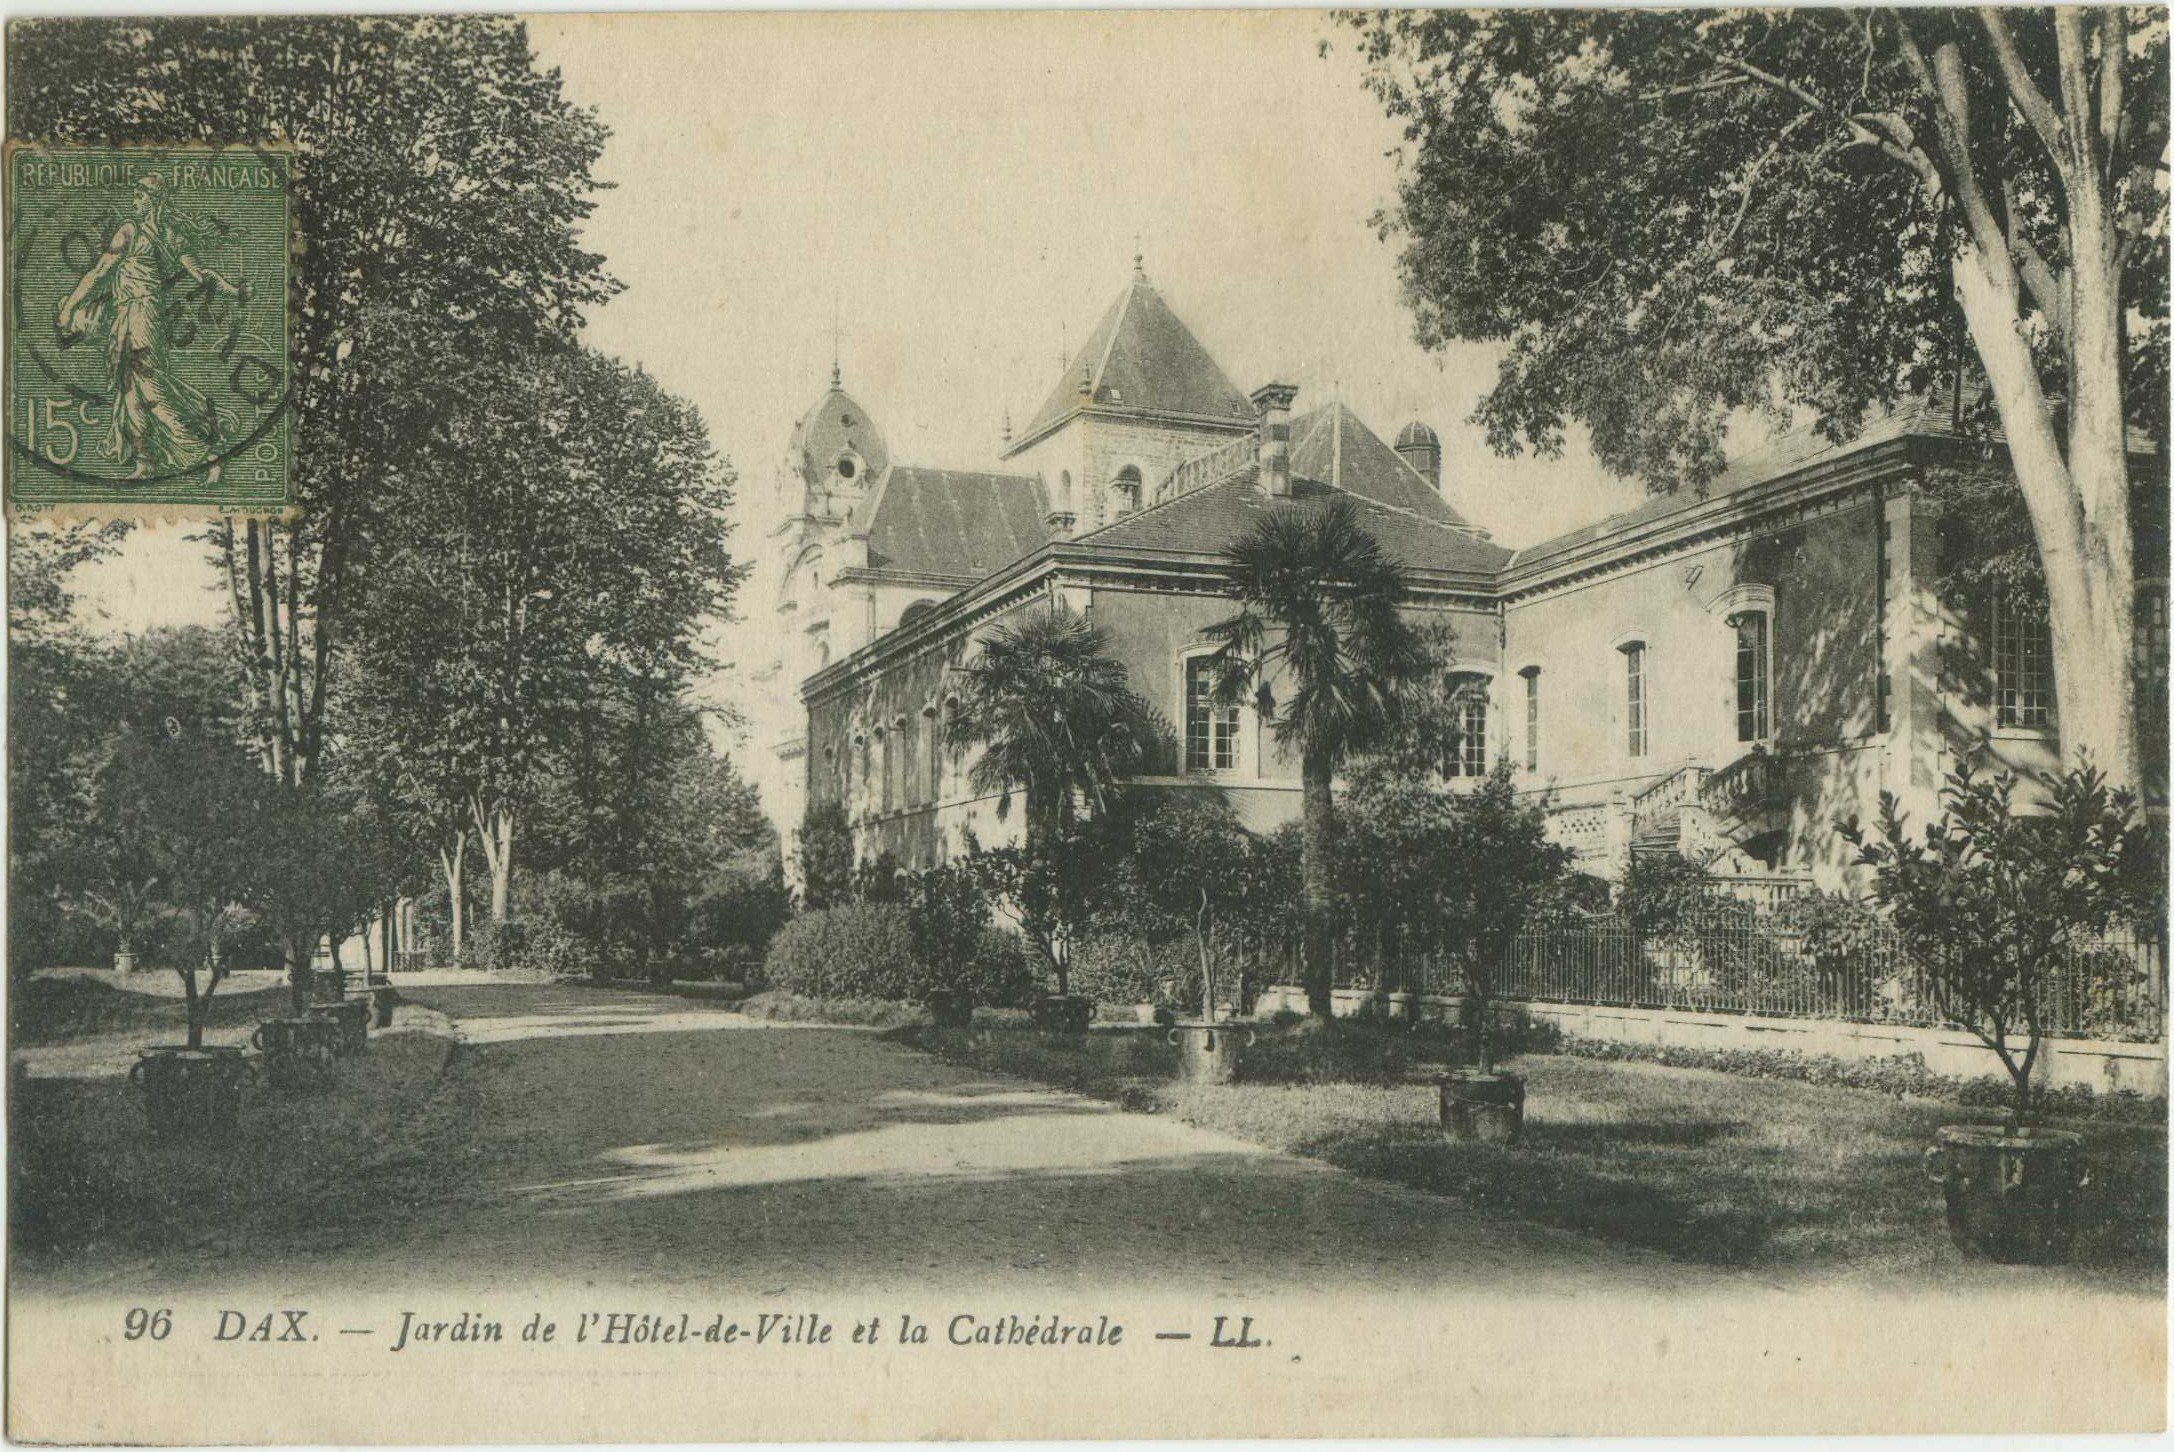 Dax - Jardin de l'Hôtel-de-Ville et la Cathédrale